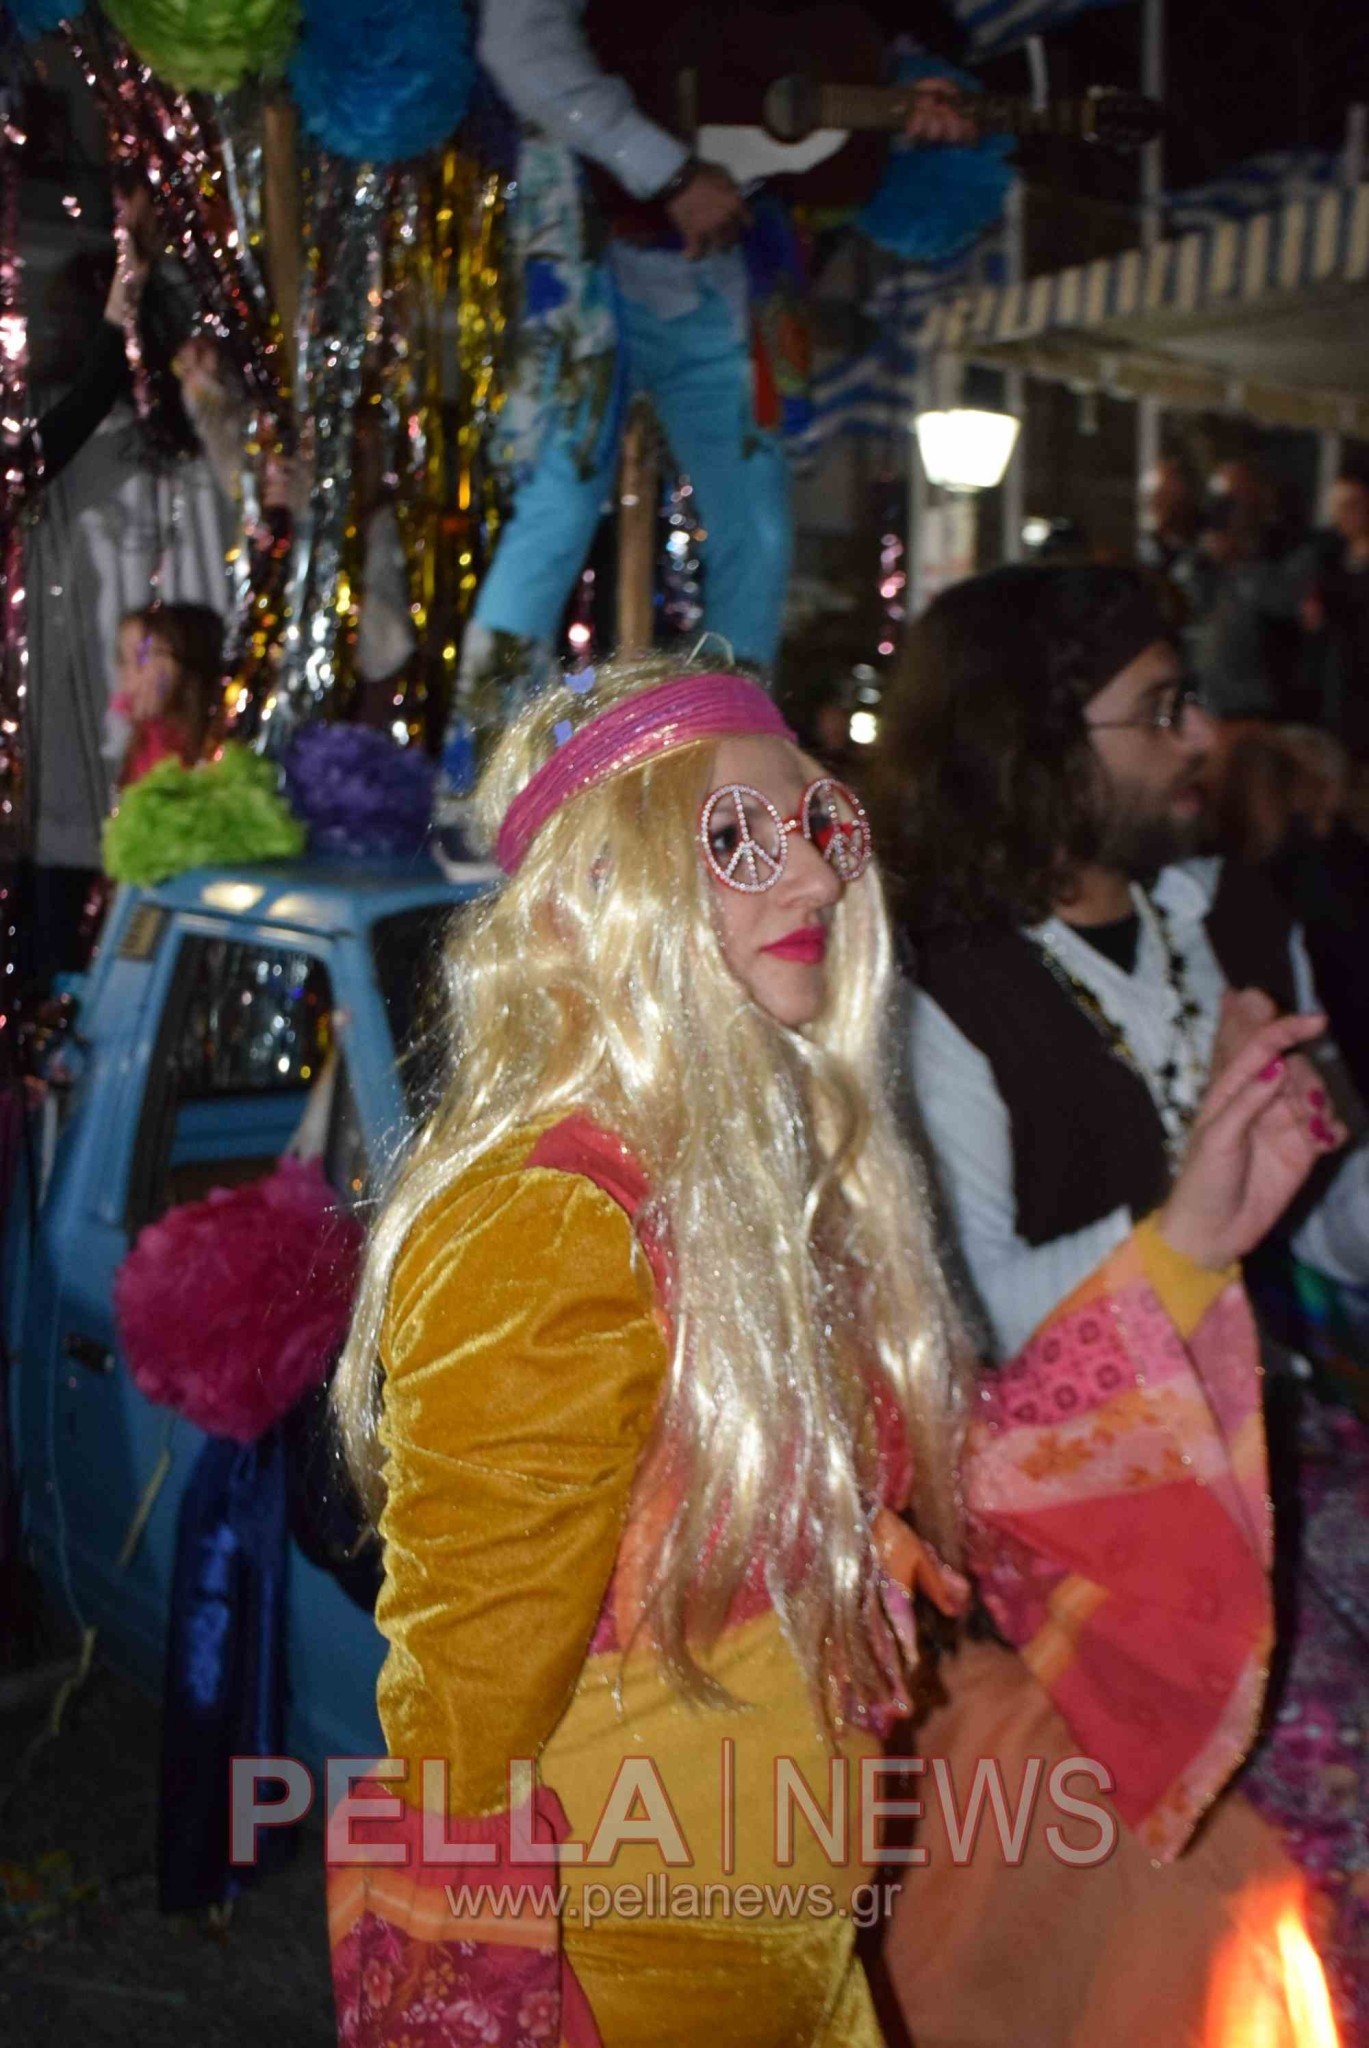 Φωτογραφικές στιγμές από το Σκυδραϊκό Καρναβάλι